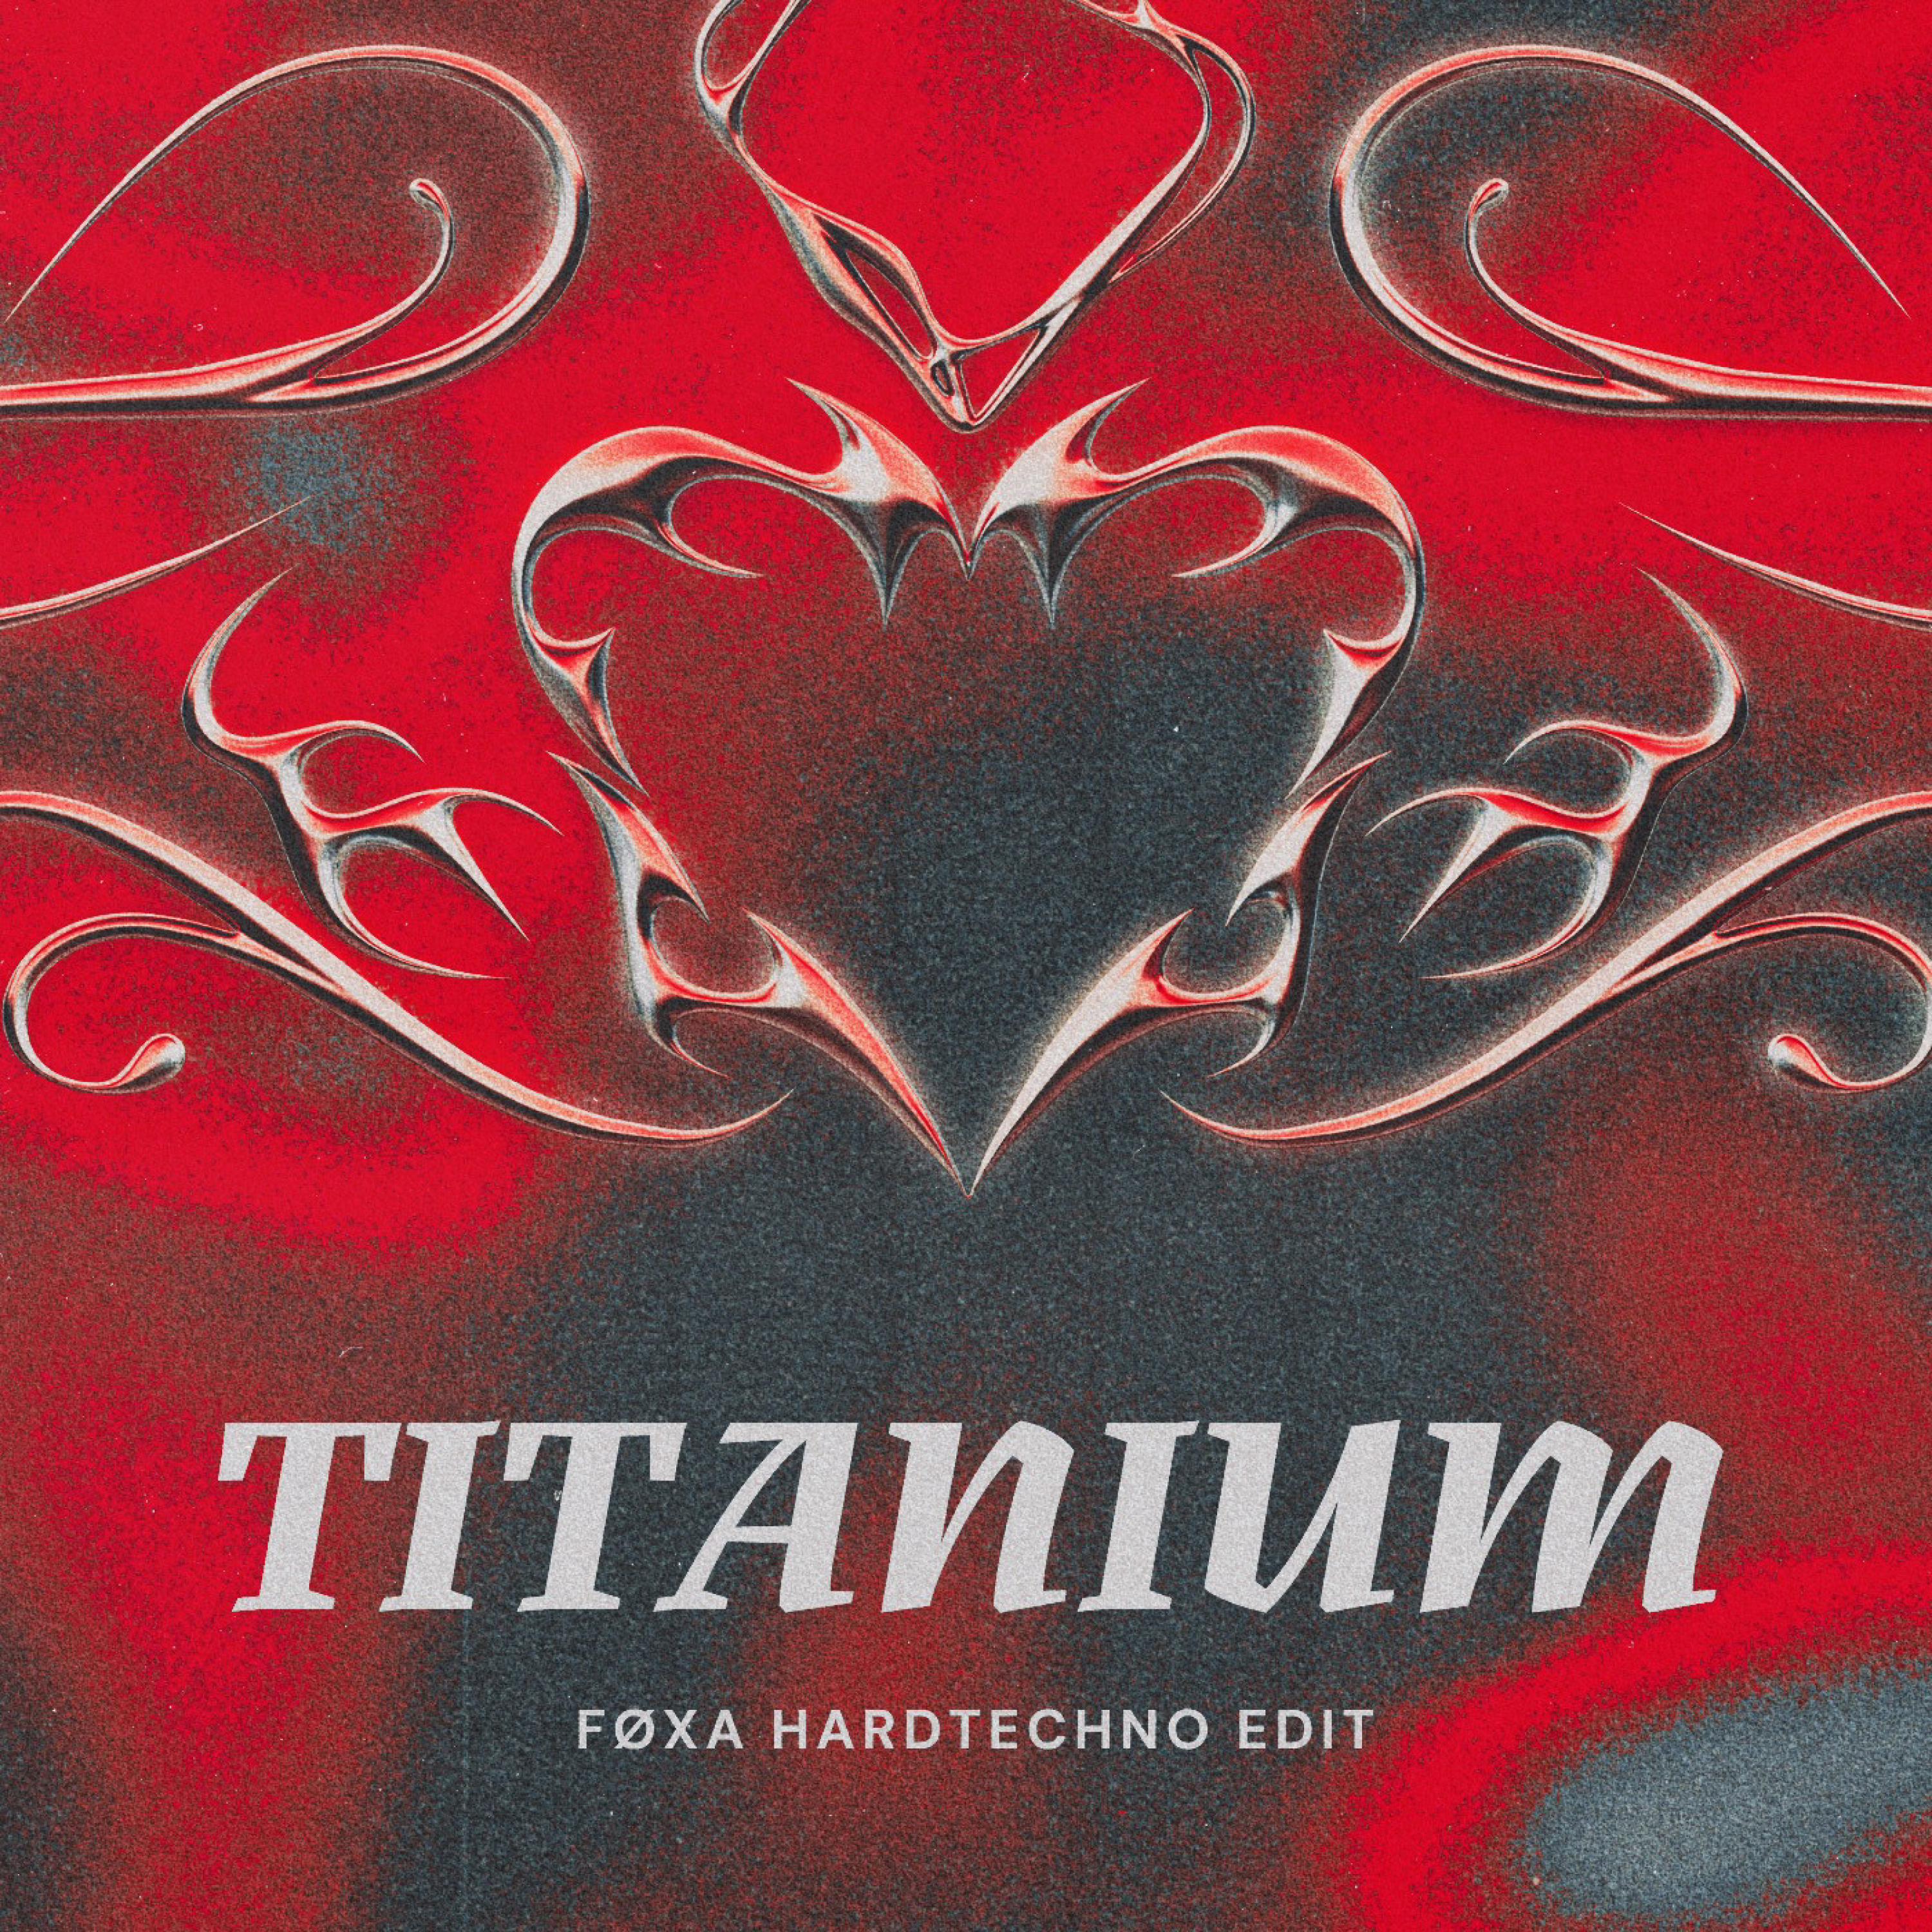 Foxa - Titanium (Hardtechno Edit)